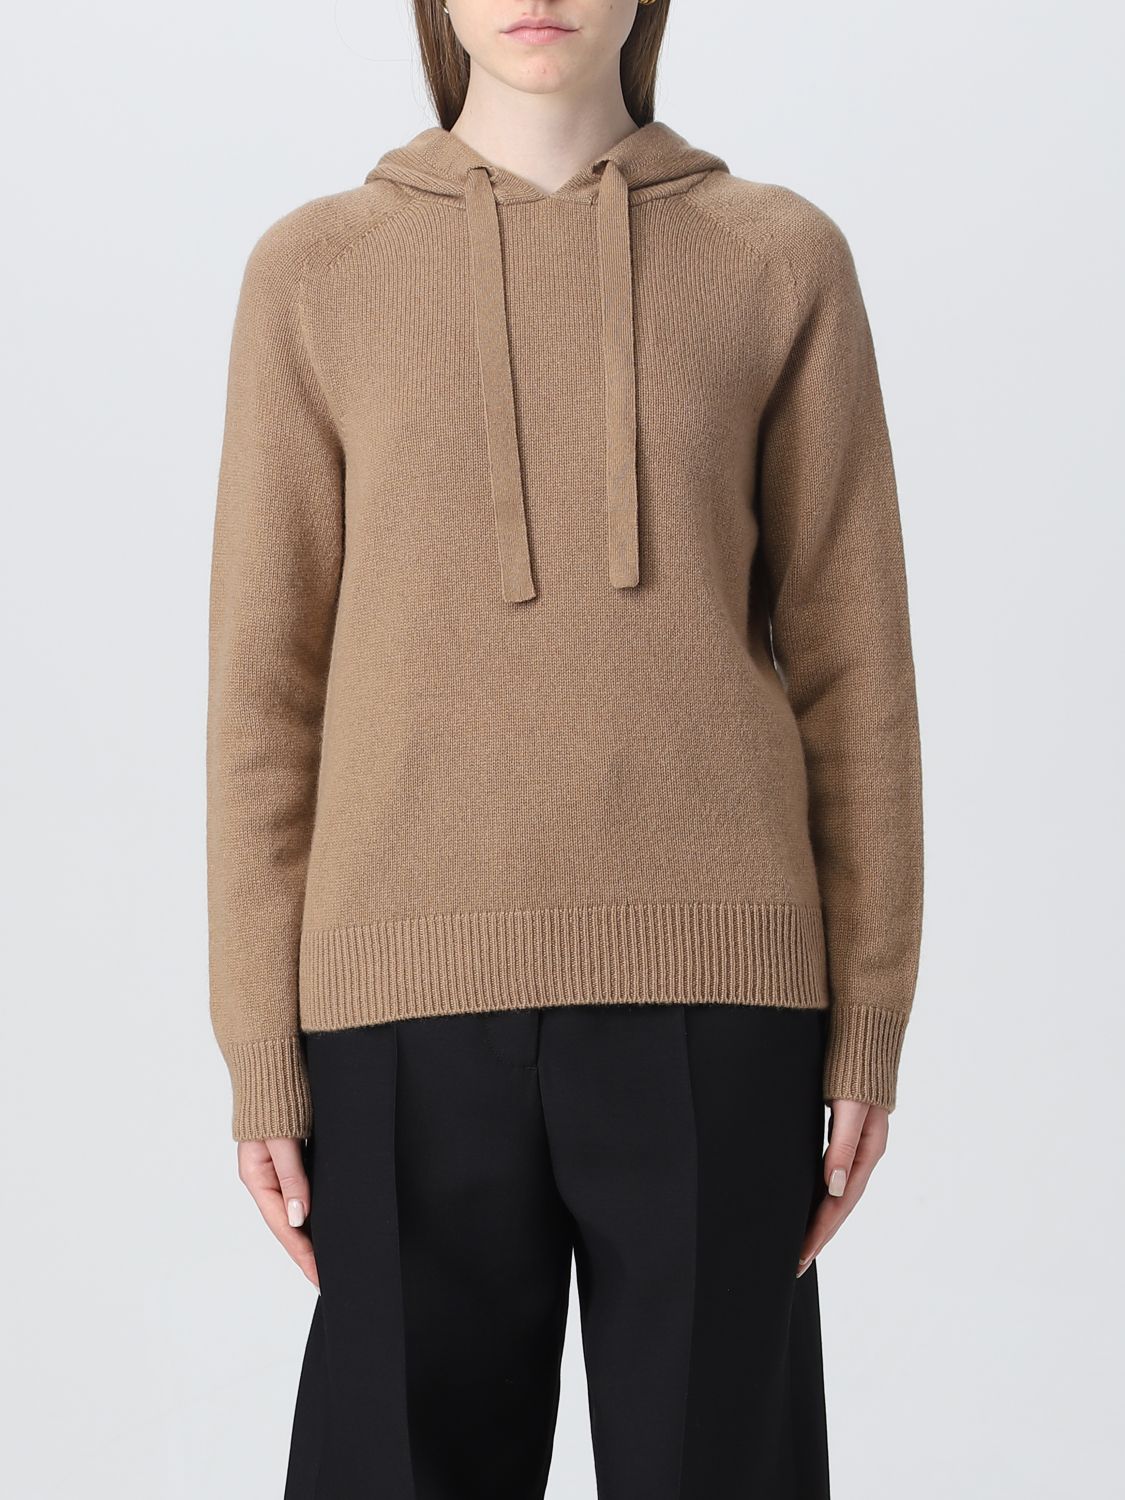 's Max Mara Sweater S Max Mara Woman Color Camel